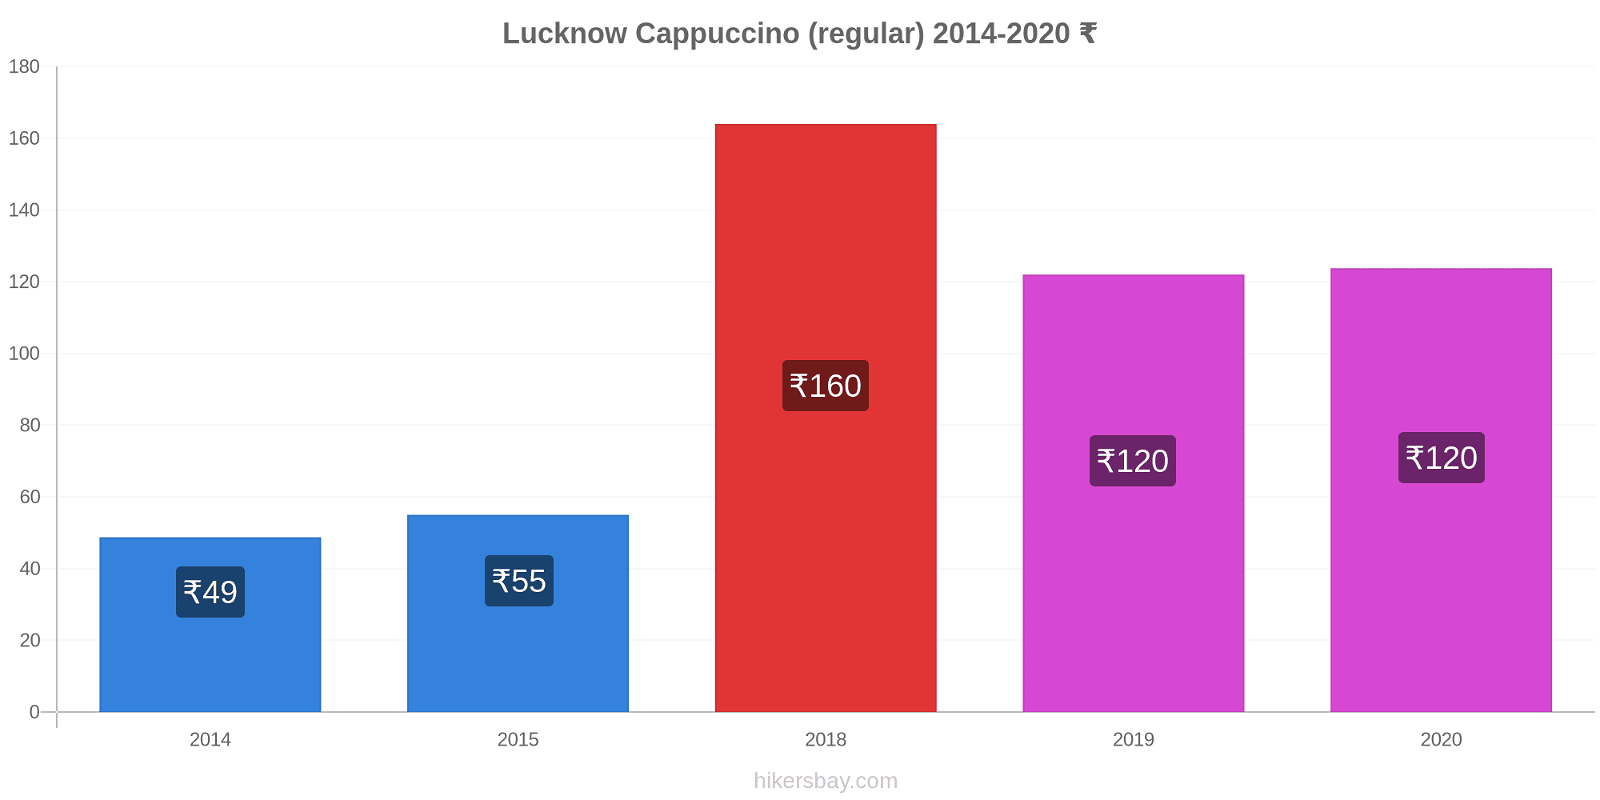 Lucknow variação de preço Capuccino (regular) hikersbay.com